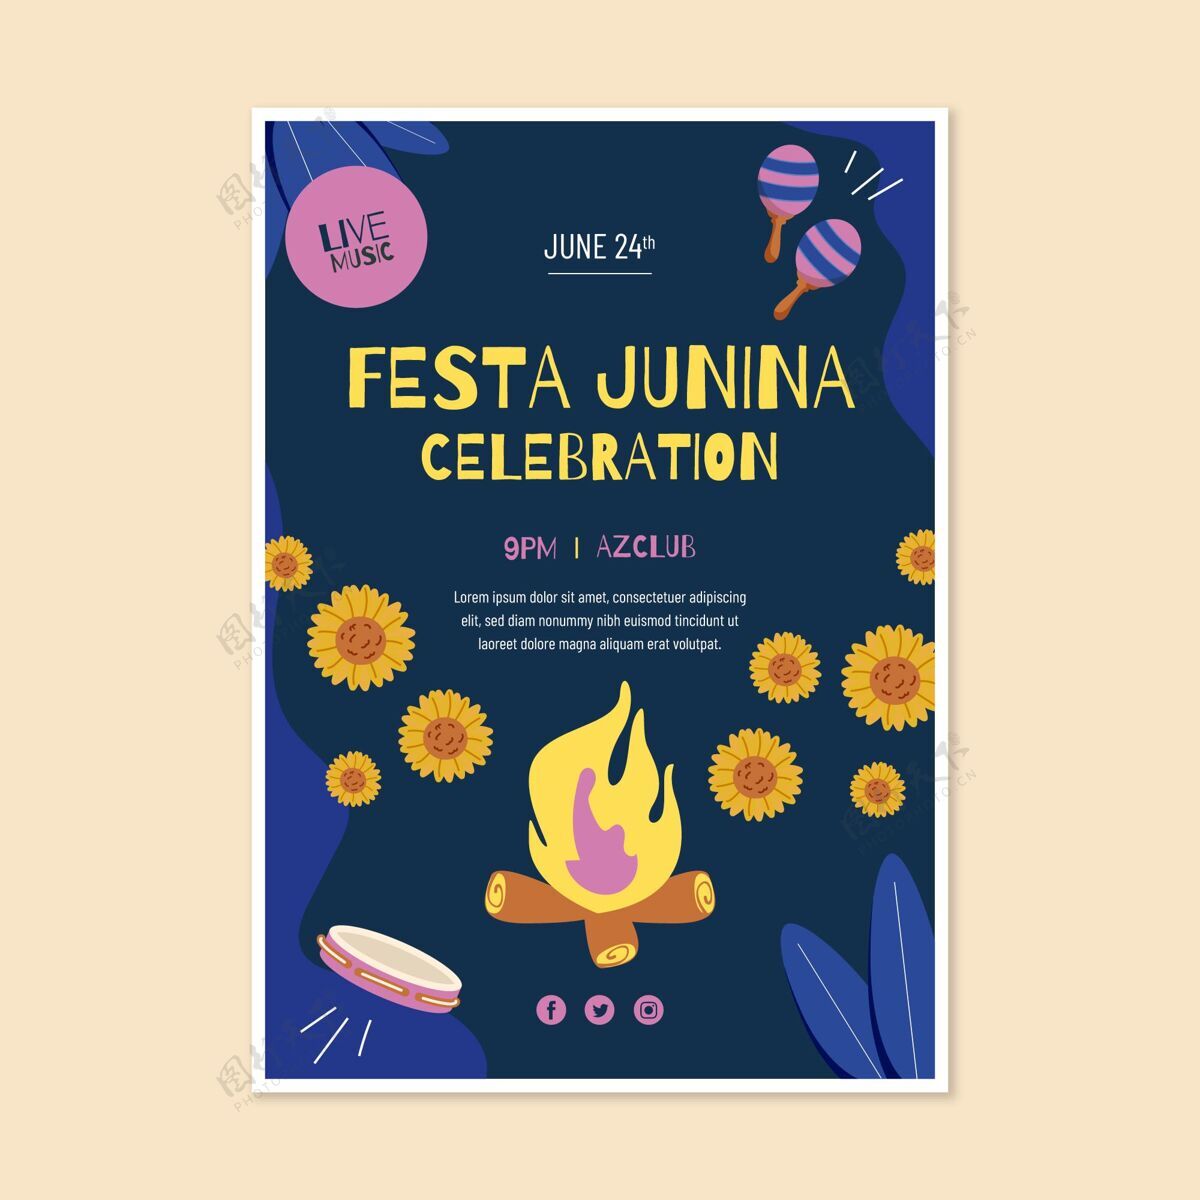 节日手绘festajunina垂直海报模板junina节庆典巴西